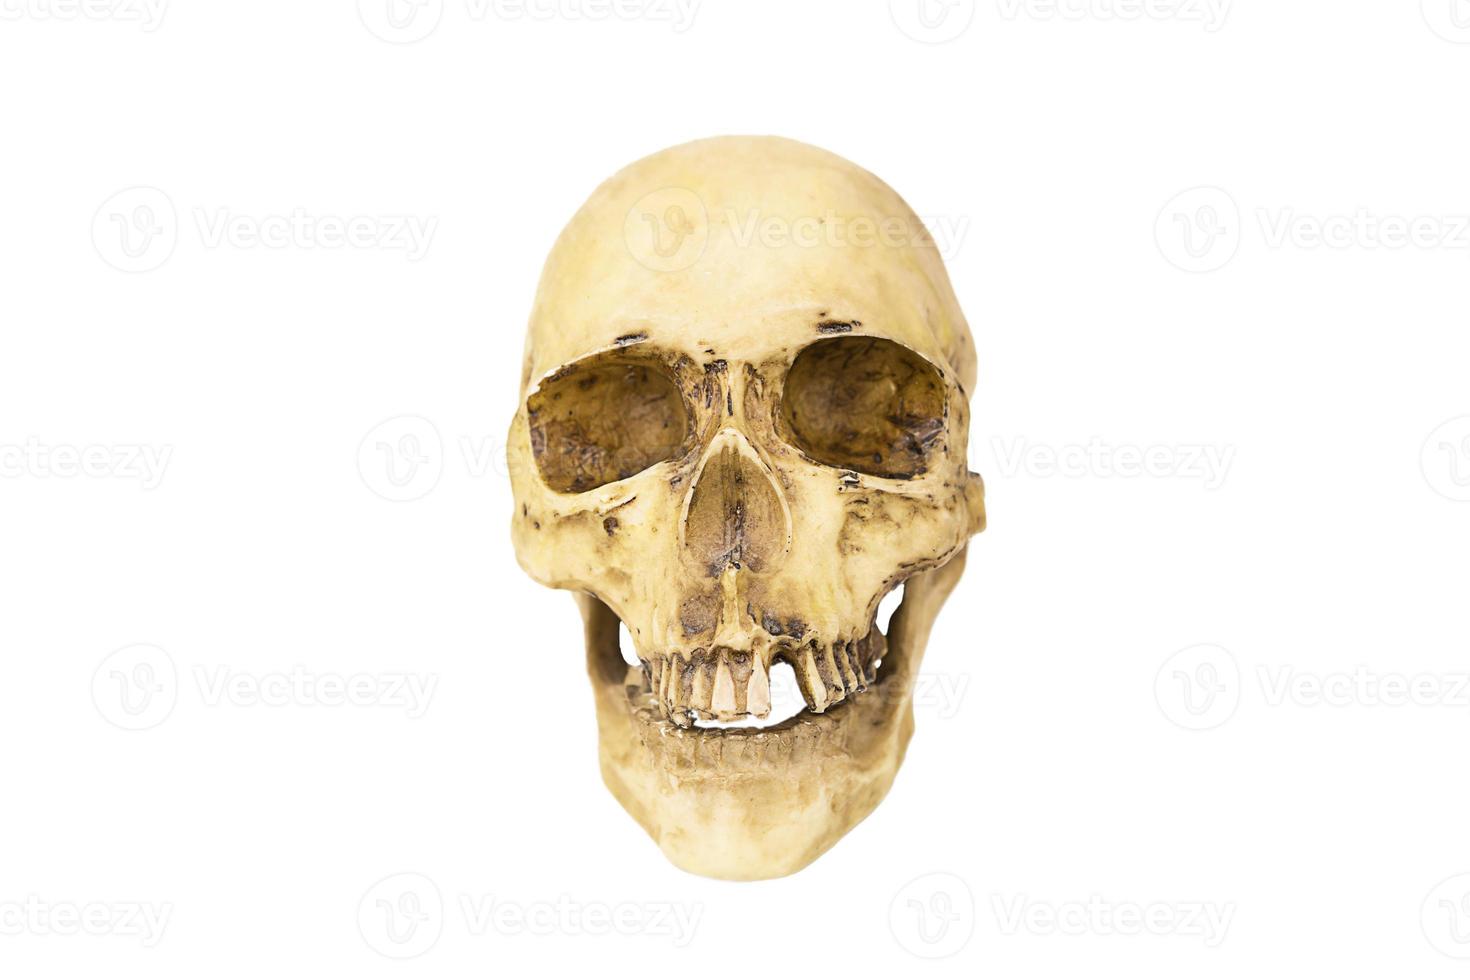 un modèle d'un crâne humain sur fond blanc, isolé. os de la tête, orbites, dents-un concept pour la science, la médecine, halloween. photo